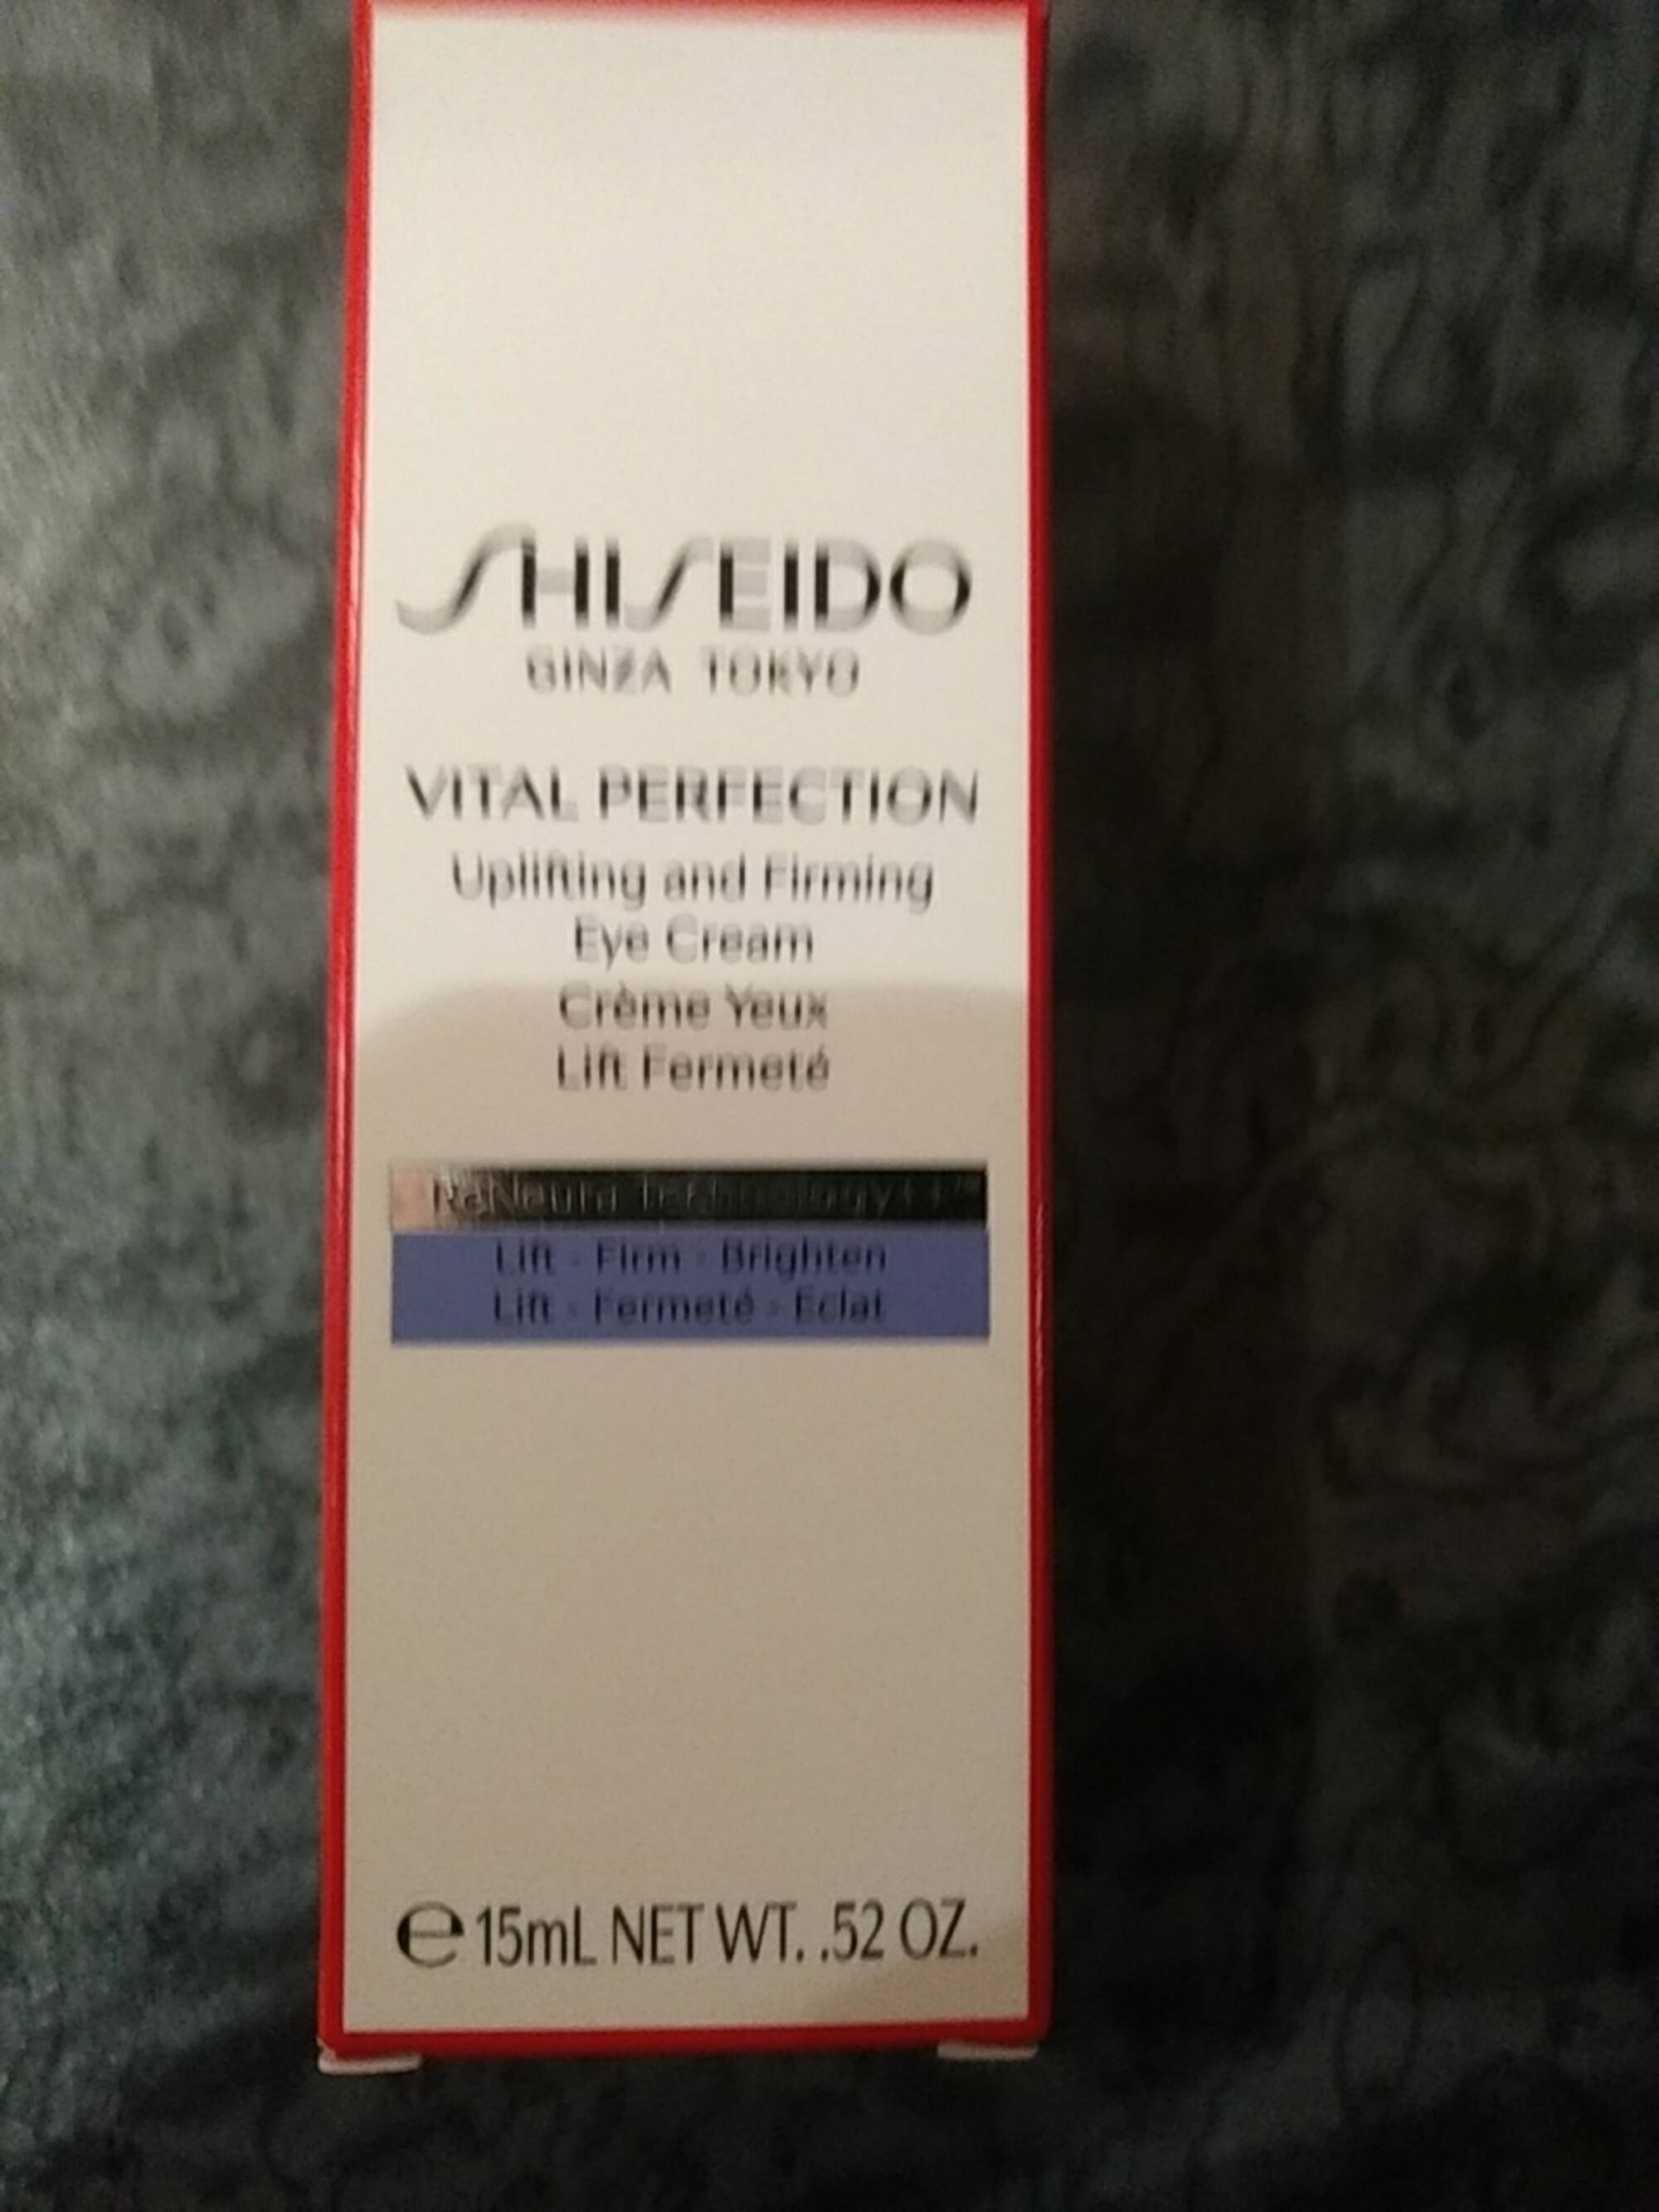 SHISEIDO - Vital perfection - Crème yeux lift fermeté